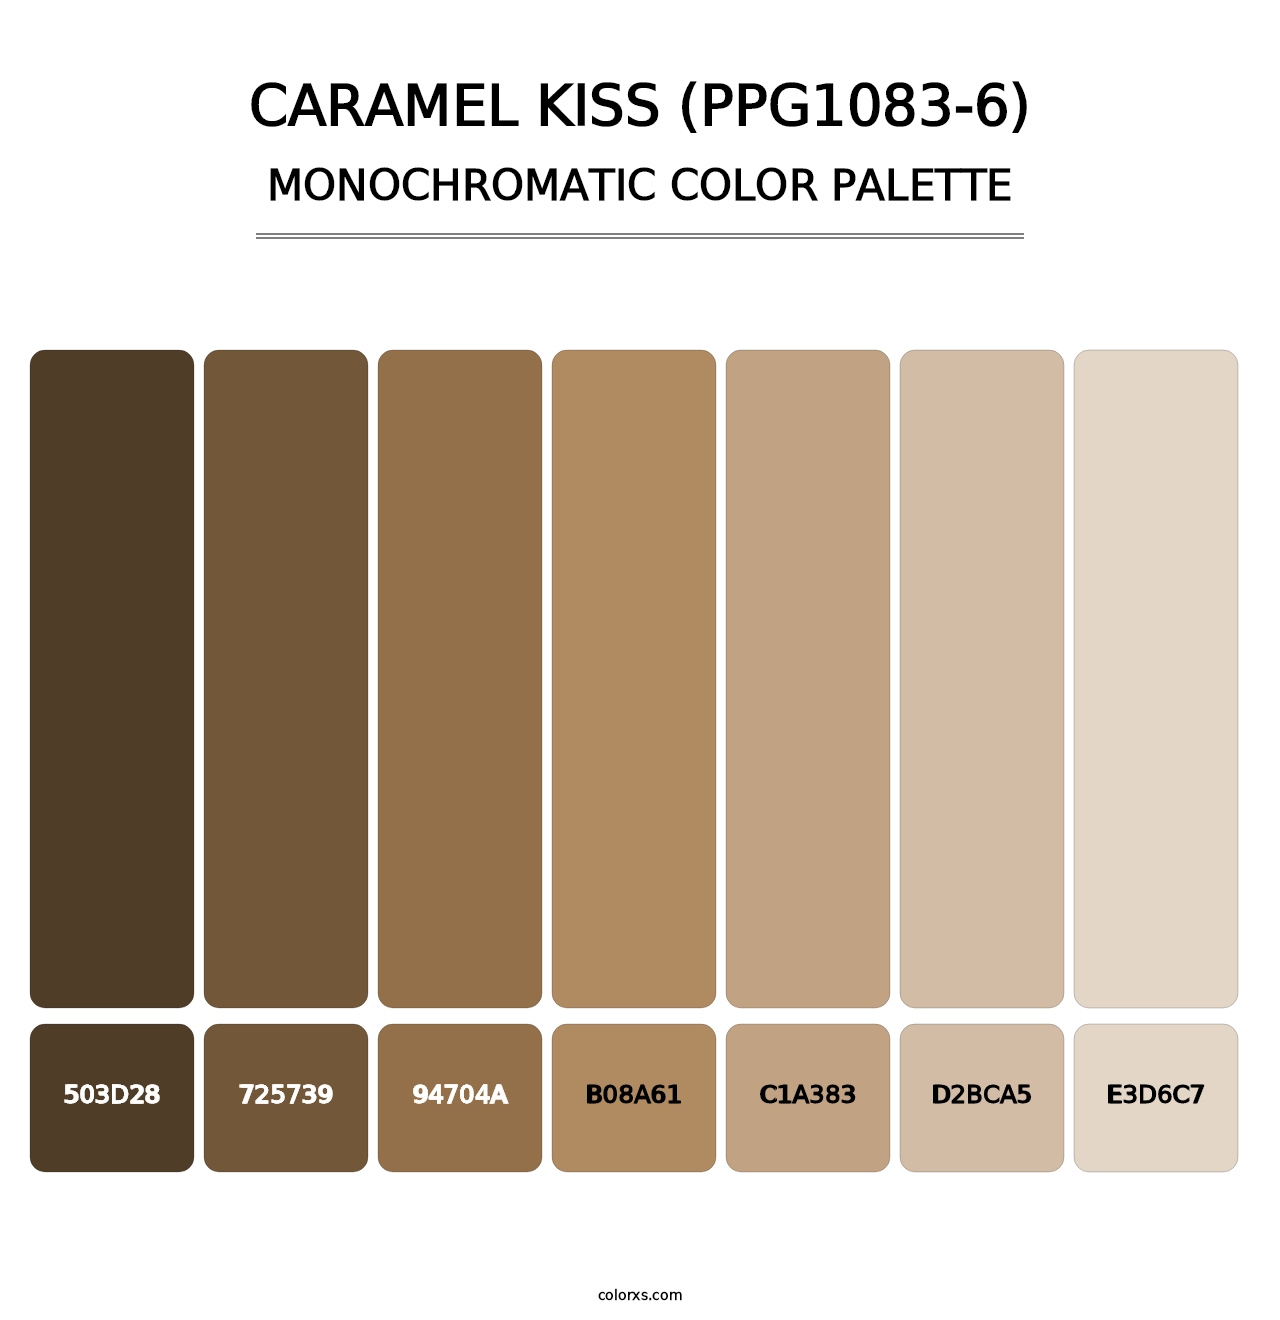 Caramel Kiss (PPG1083-6) - Monochromatic Color Palette